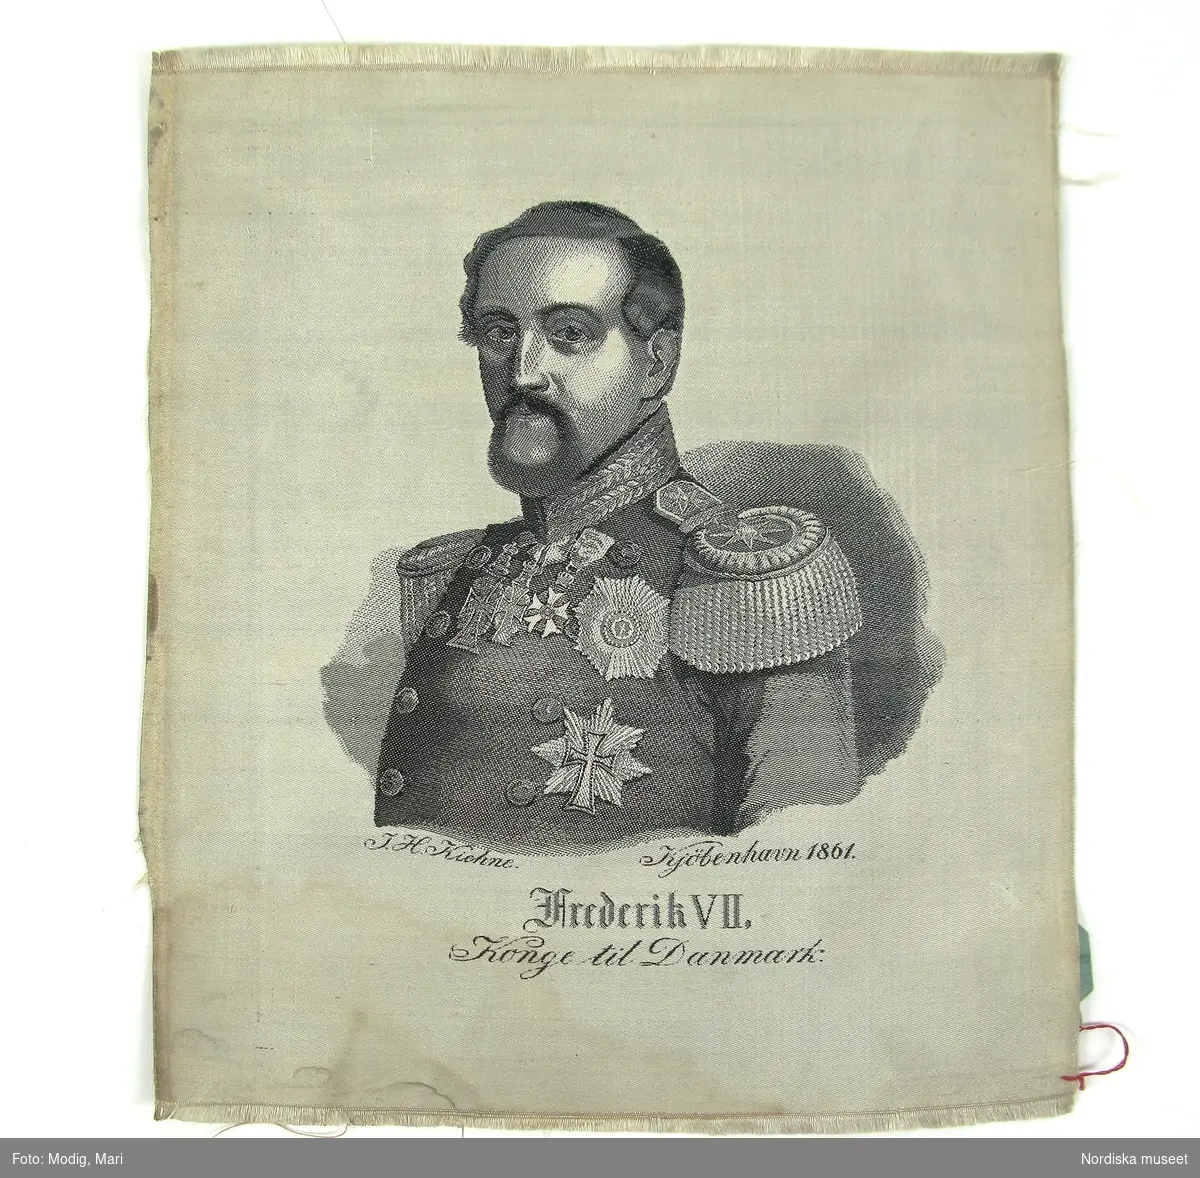 Kung av Danmark, regent 1848-1863